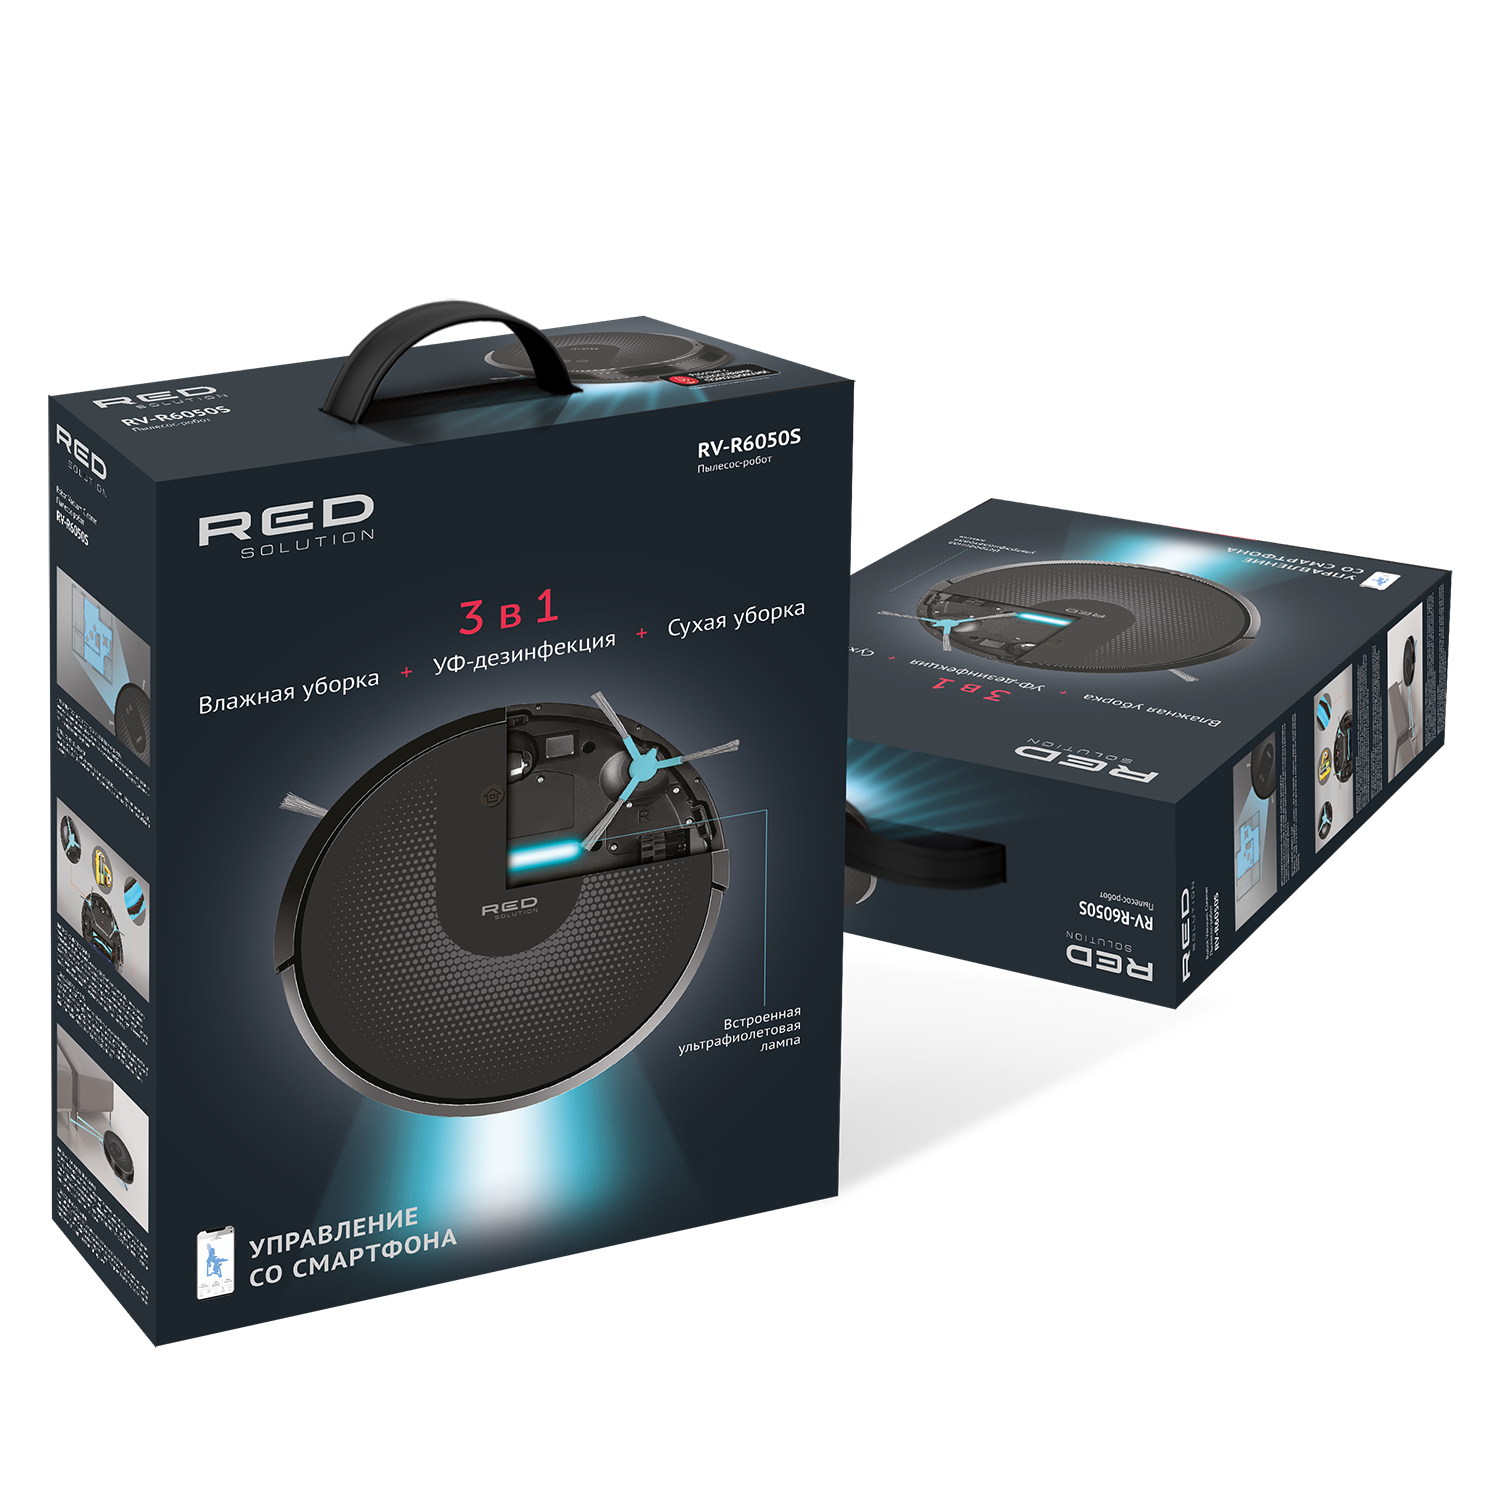 Умный робот-пылесос RED solution RV-R6050S Wi-Fi